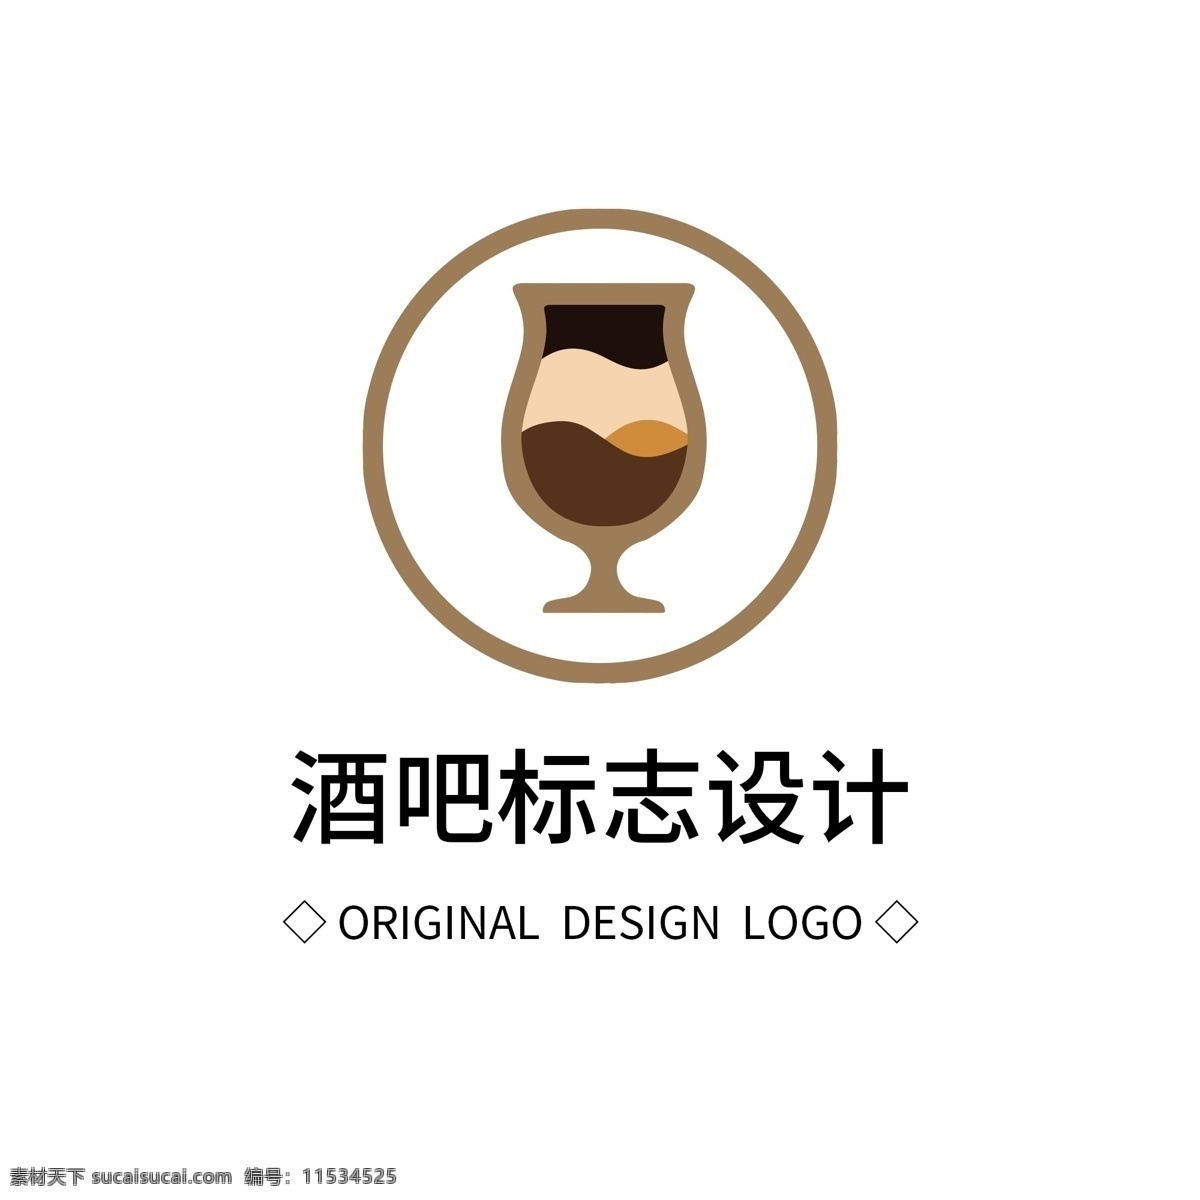 原创 酒吧 标志设计 logo 创意 简约 标识 标志 可商用 广告 传媒 字体设计 元素 企业logo 公司logo 徽标 咖啡 酒杯 饮料 酒吧logo 饮吧logo